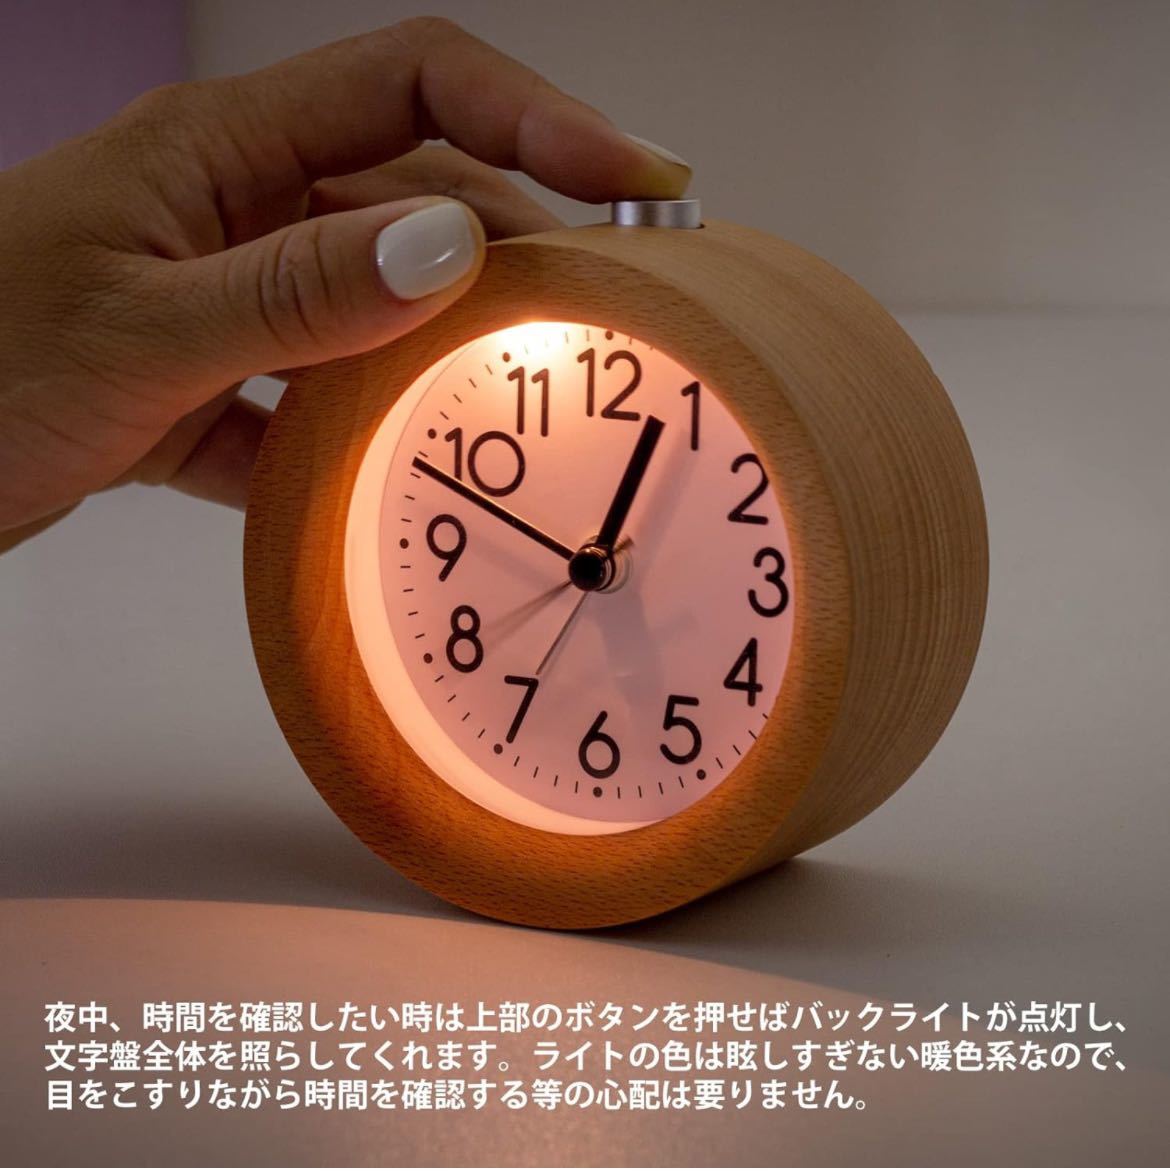 目覚まし時計 置き時計 ナチュラル 卓上時計 静音 連続秒針 アラーム時計 照明ライト付き 木製 電池式 小型(ナチュラル)_画像2